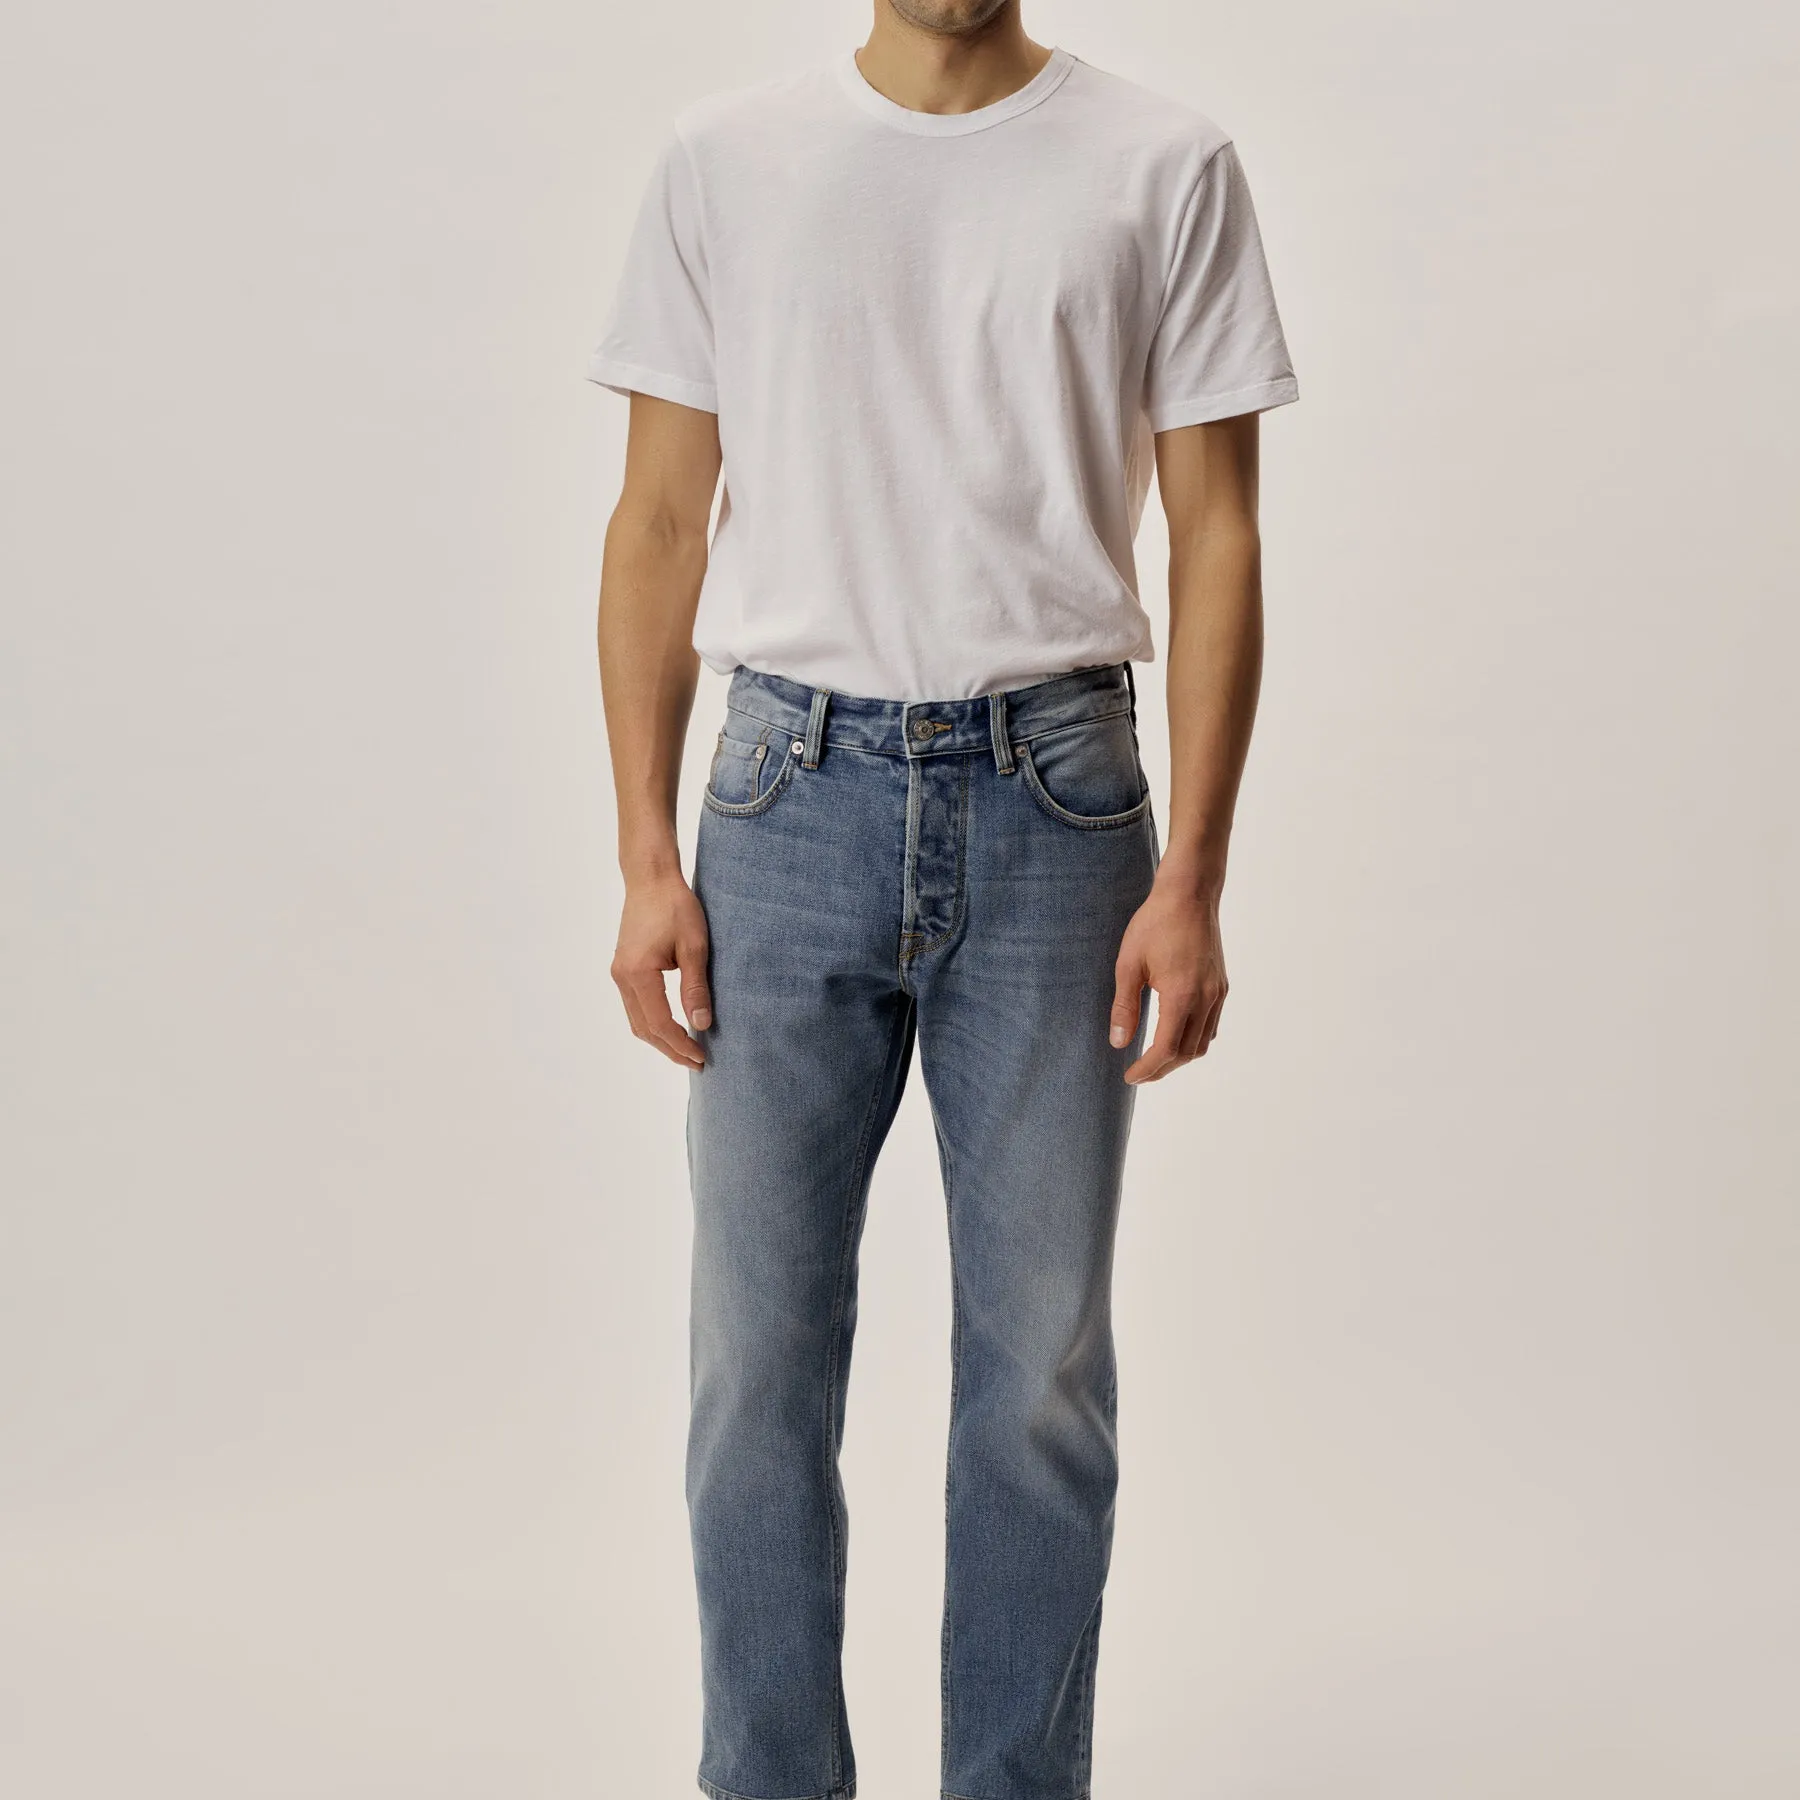 Anyu calça jeans unissex, calça jeans personalizada de tecido denim para homens e mulheres